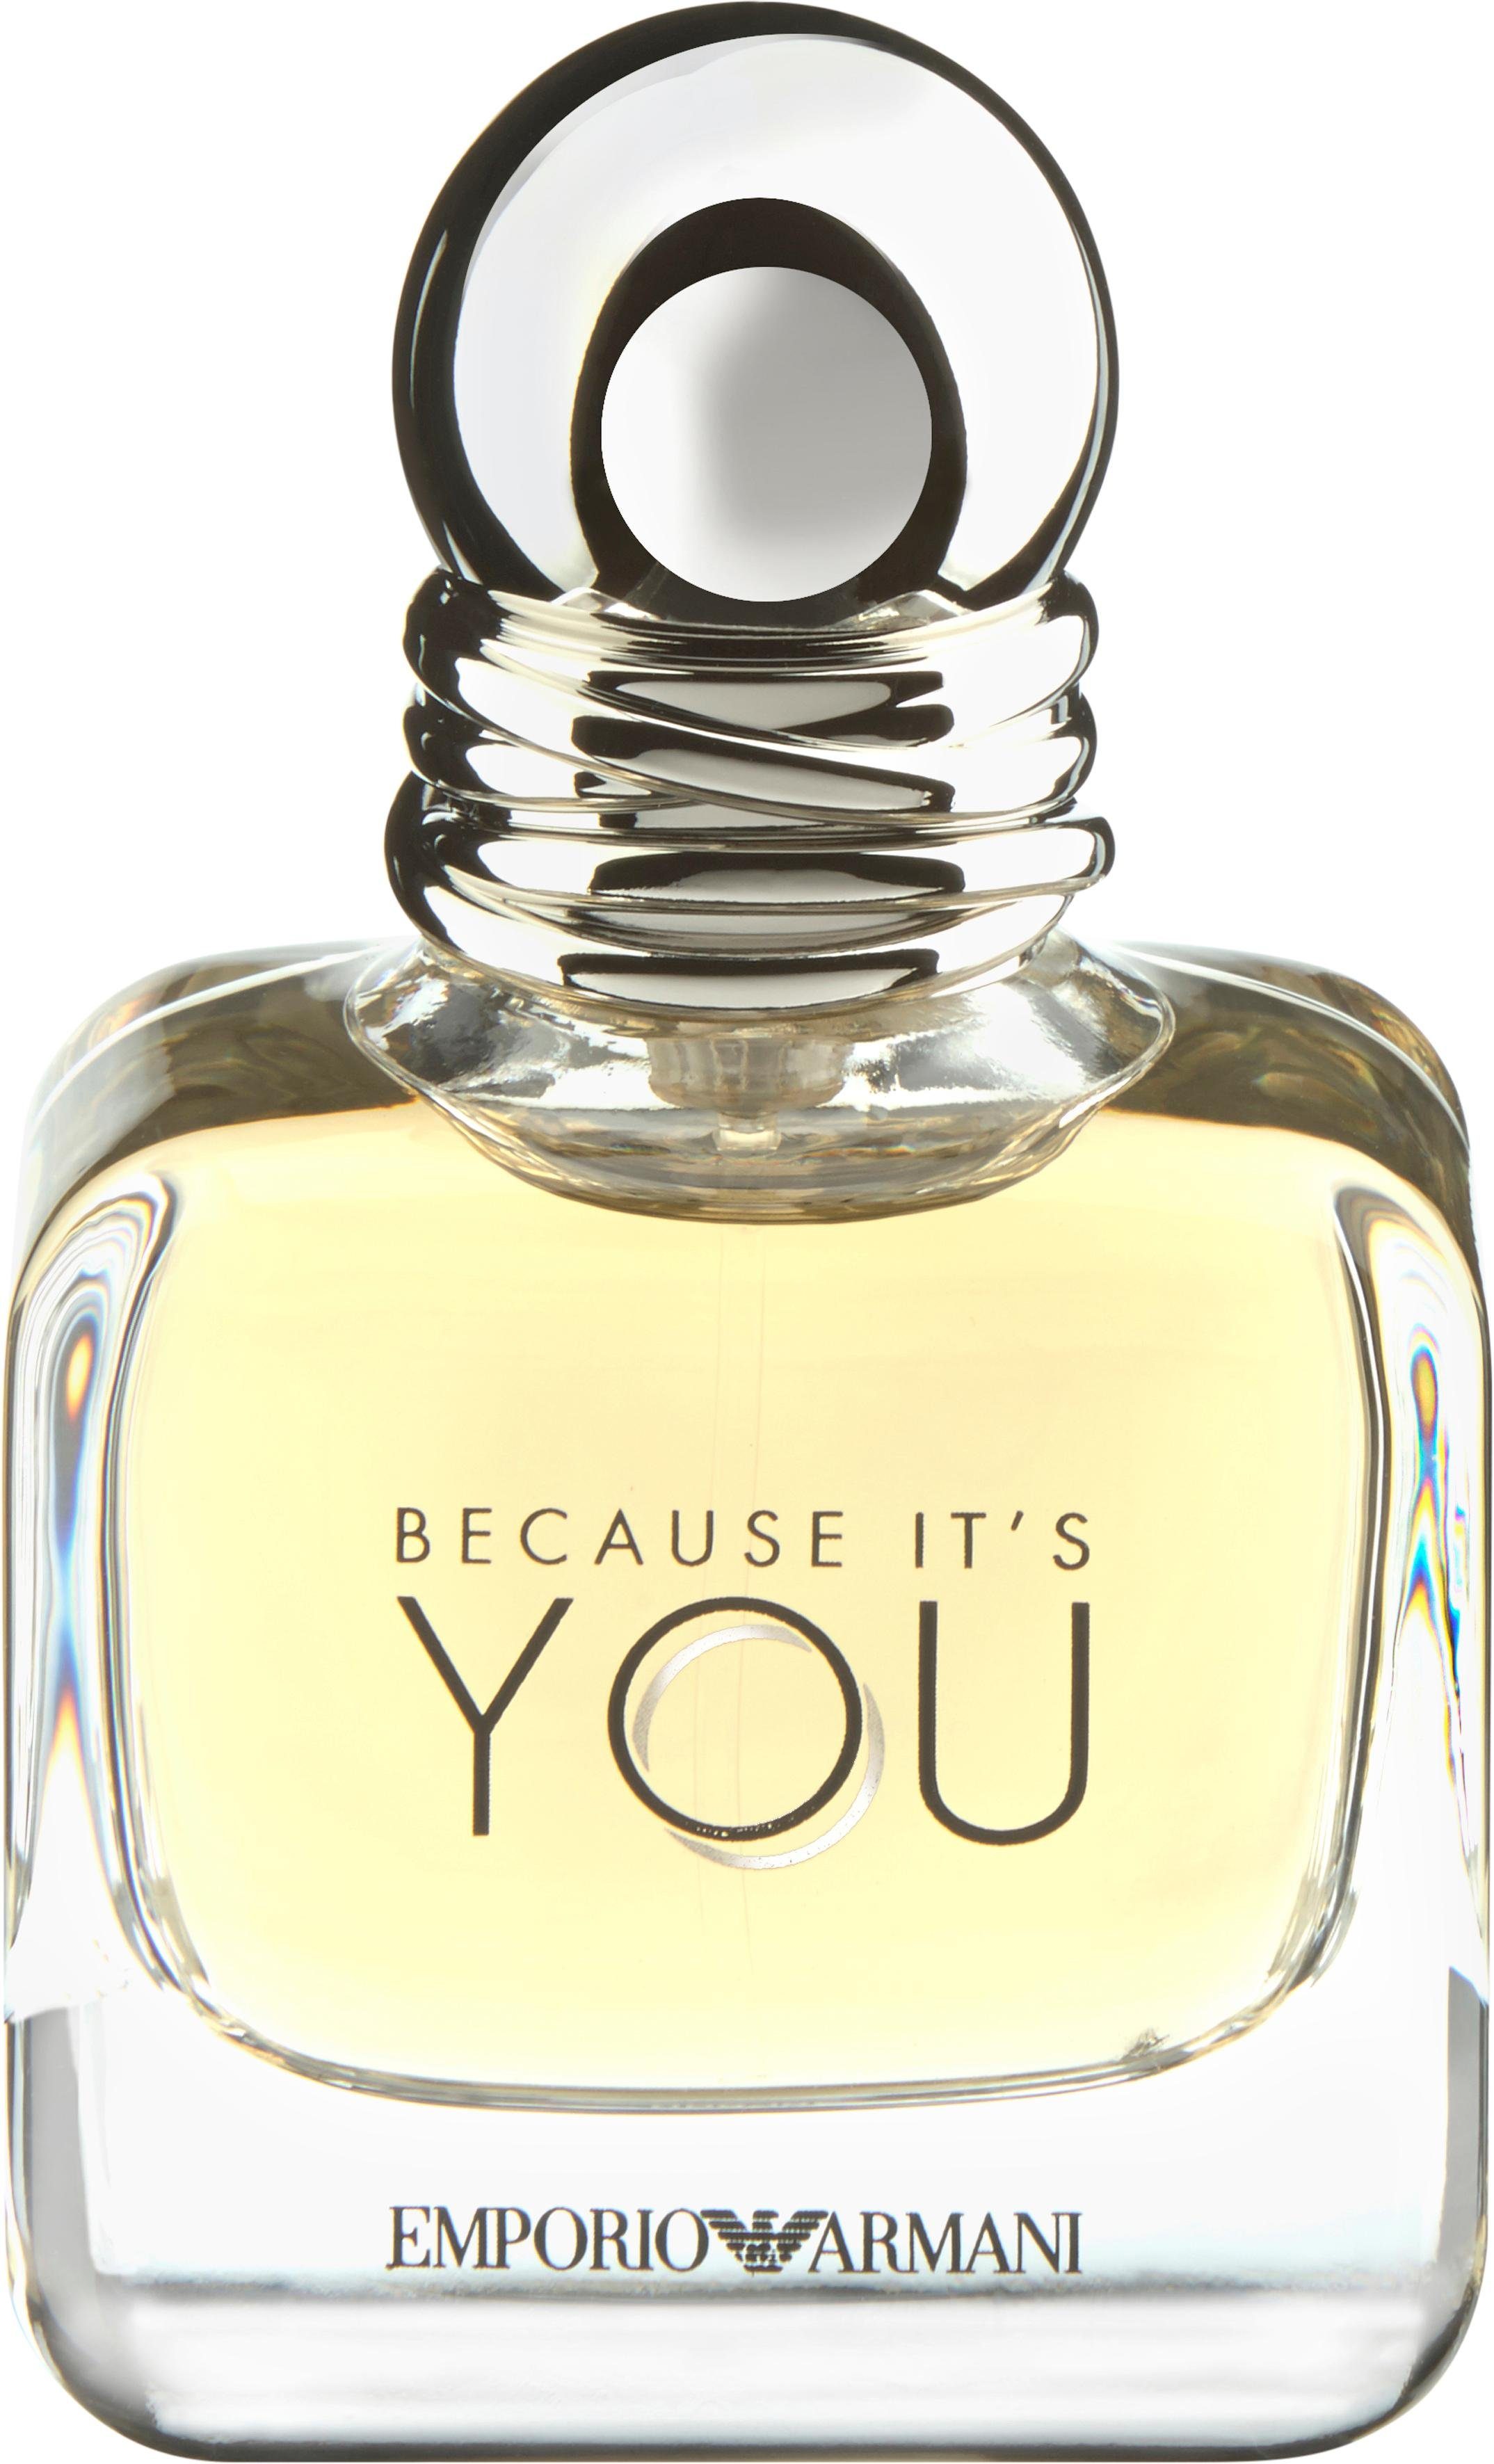 Giorgio Armani Eau de Parfum »Because it's You« | OTTO